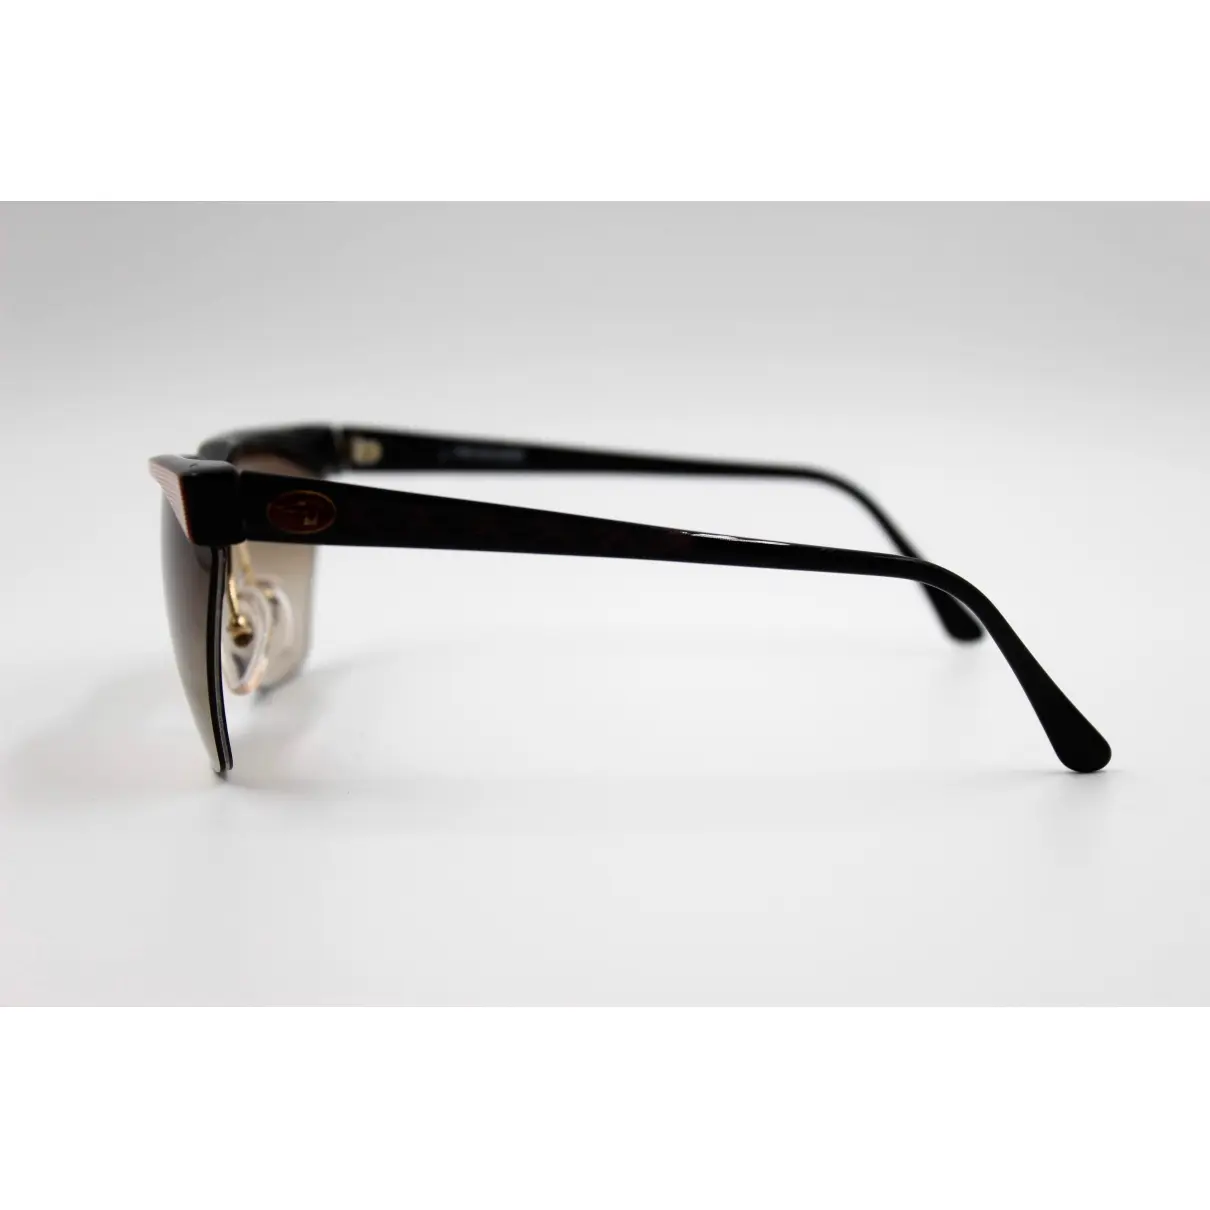 Buy Trussardi Goggle glasses online - Vintage